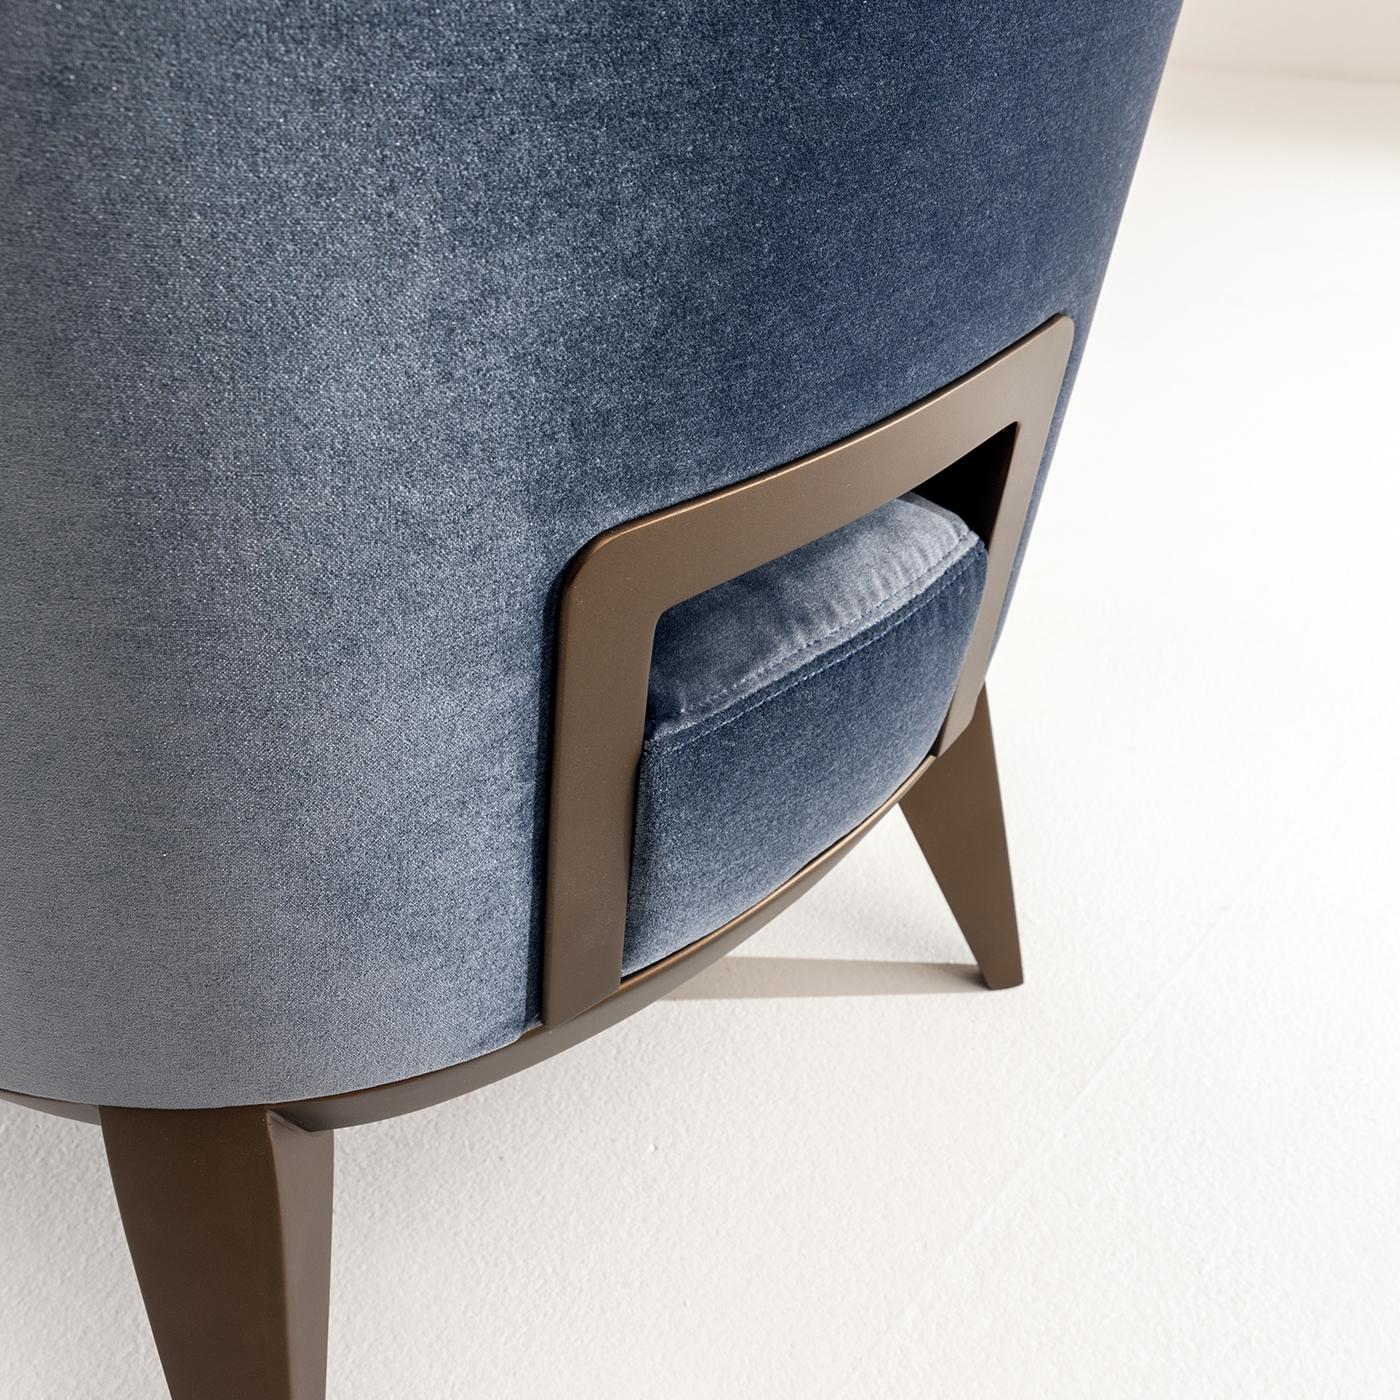 Doté d'une poignée distinctive sculptée dans le dos, le fauteuil Margaret de Cesare Arosio a une structure en bois naturel, qui peut être laquée, et est rembourré et tapissé en cuir, tissu ou velours. Extrêmement confortable, la poignée intégrée